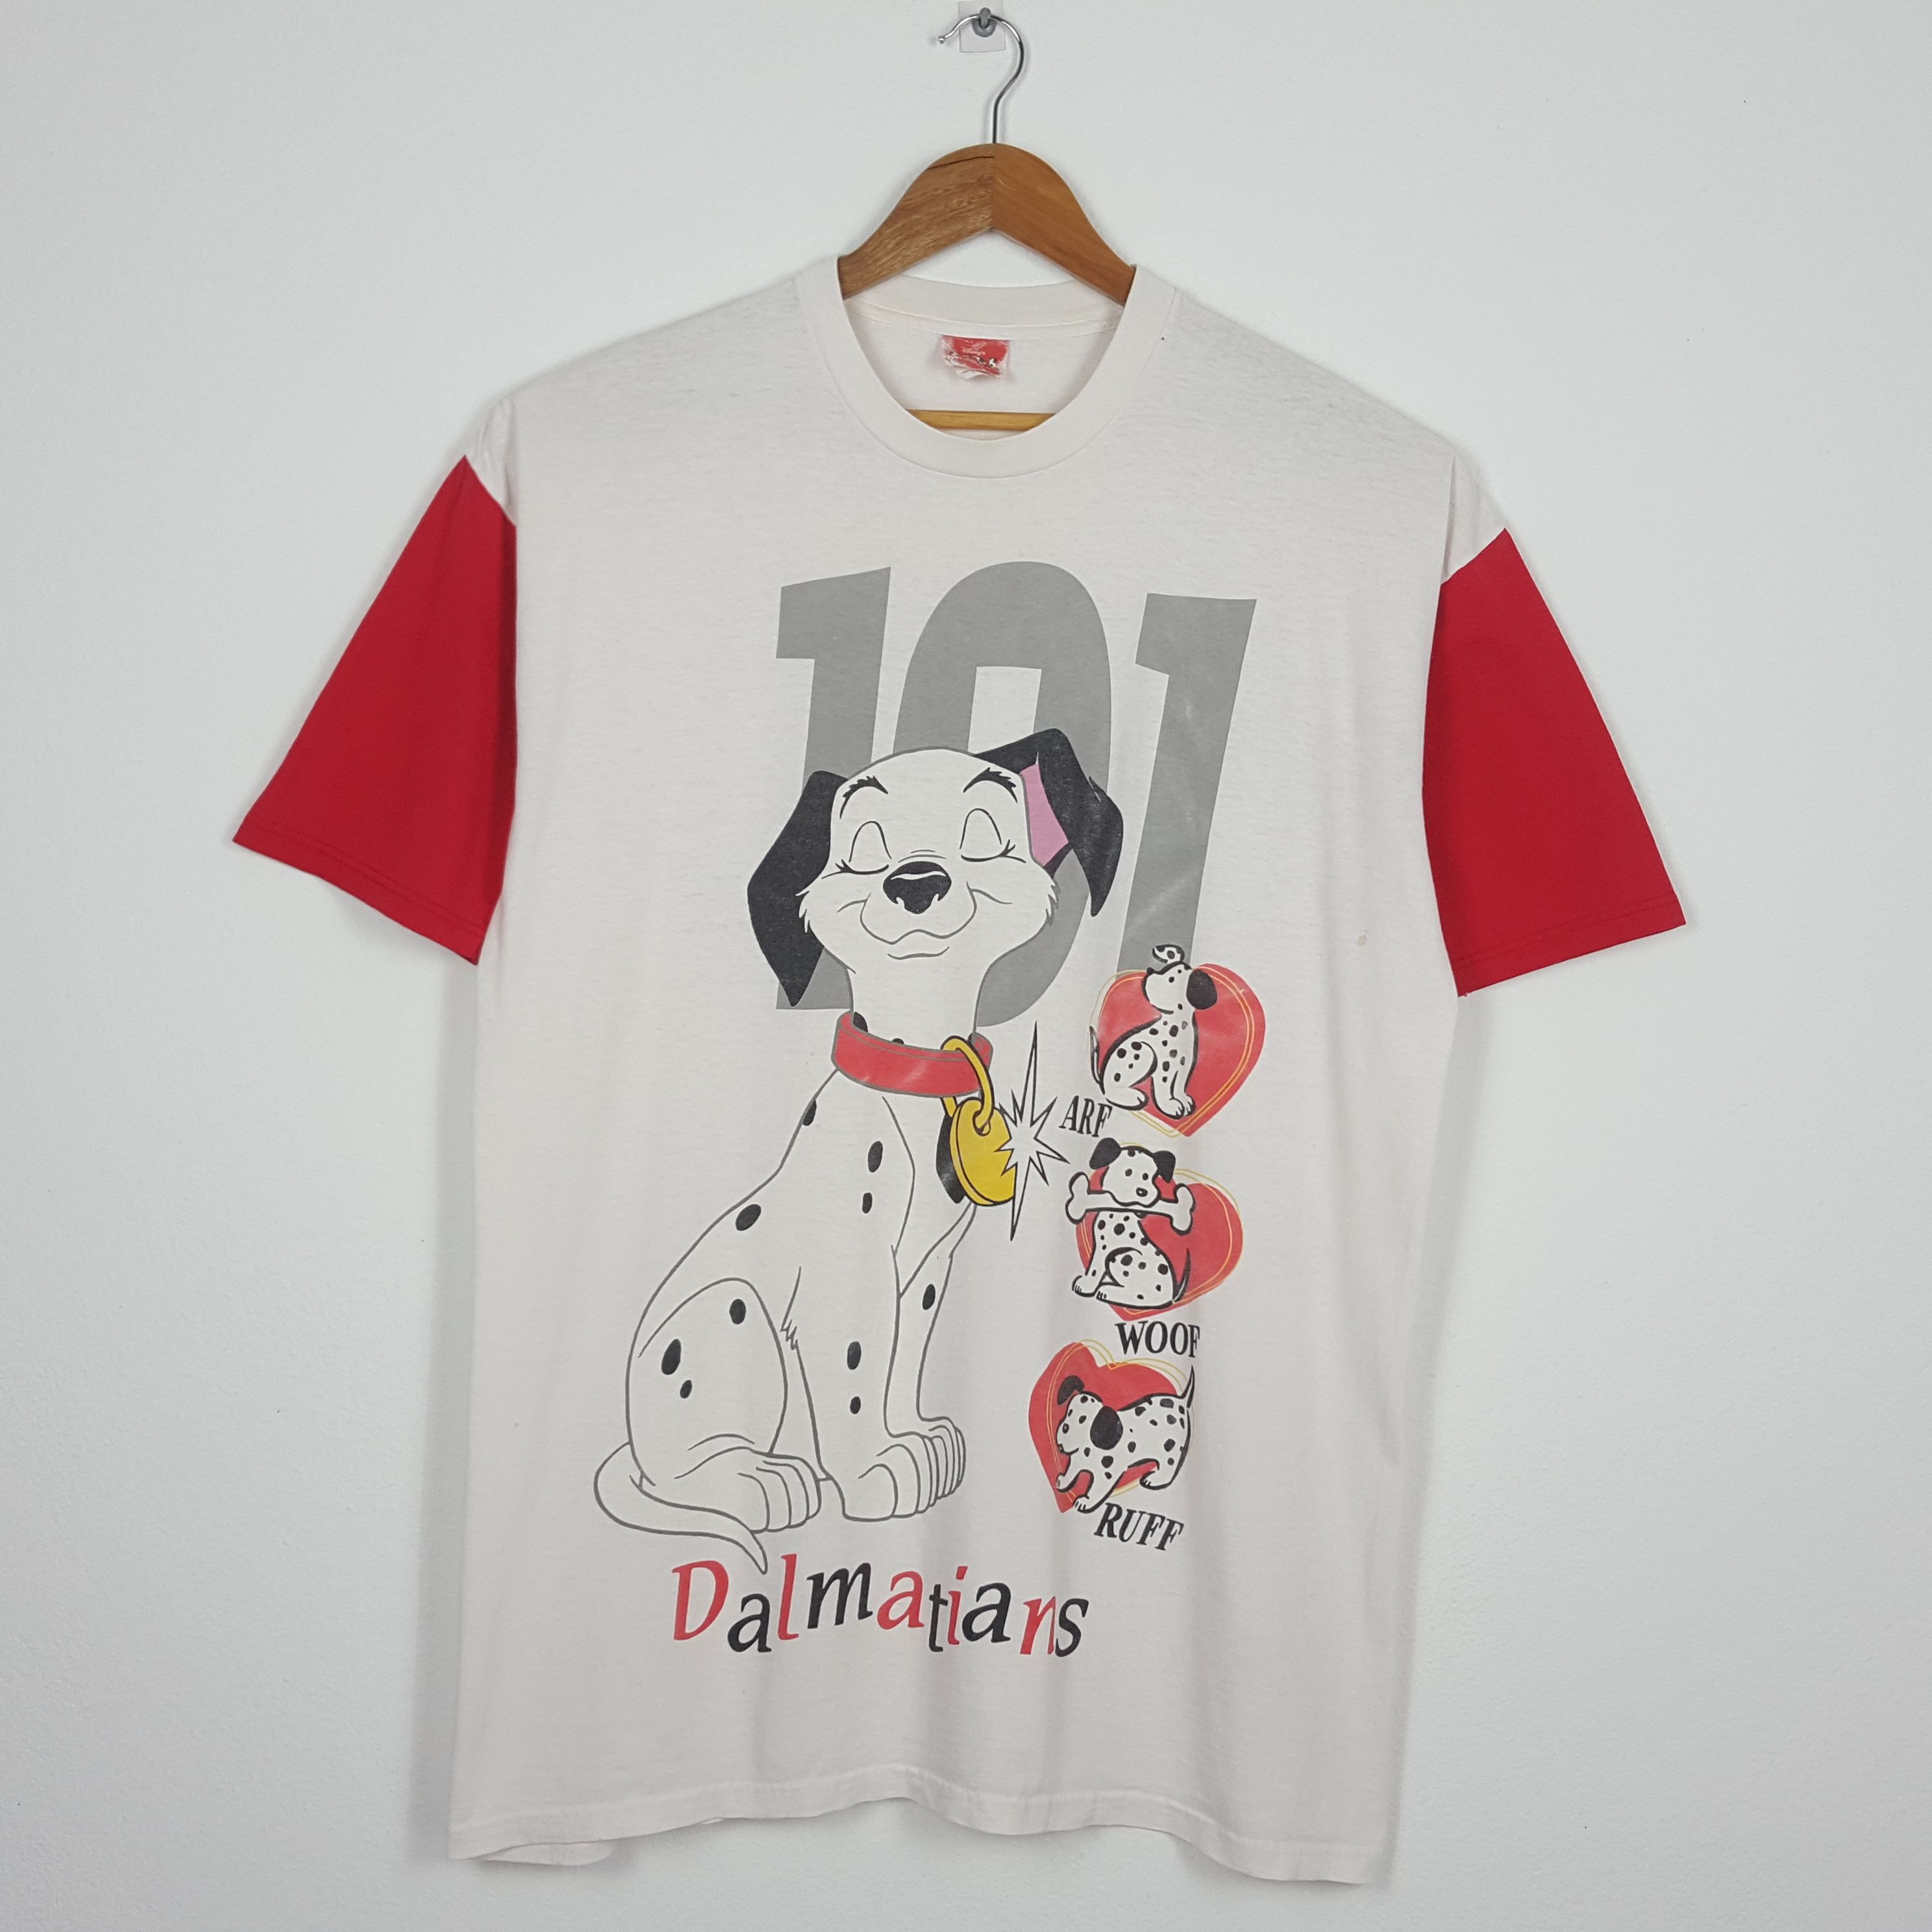 Vintage 101 Dalmatians Disney's Adventure Movie T-Shirt